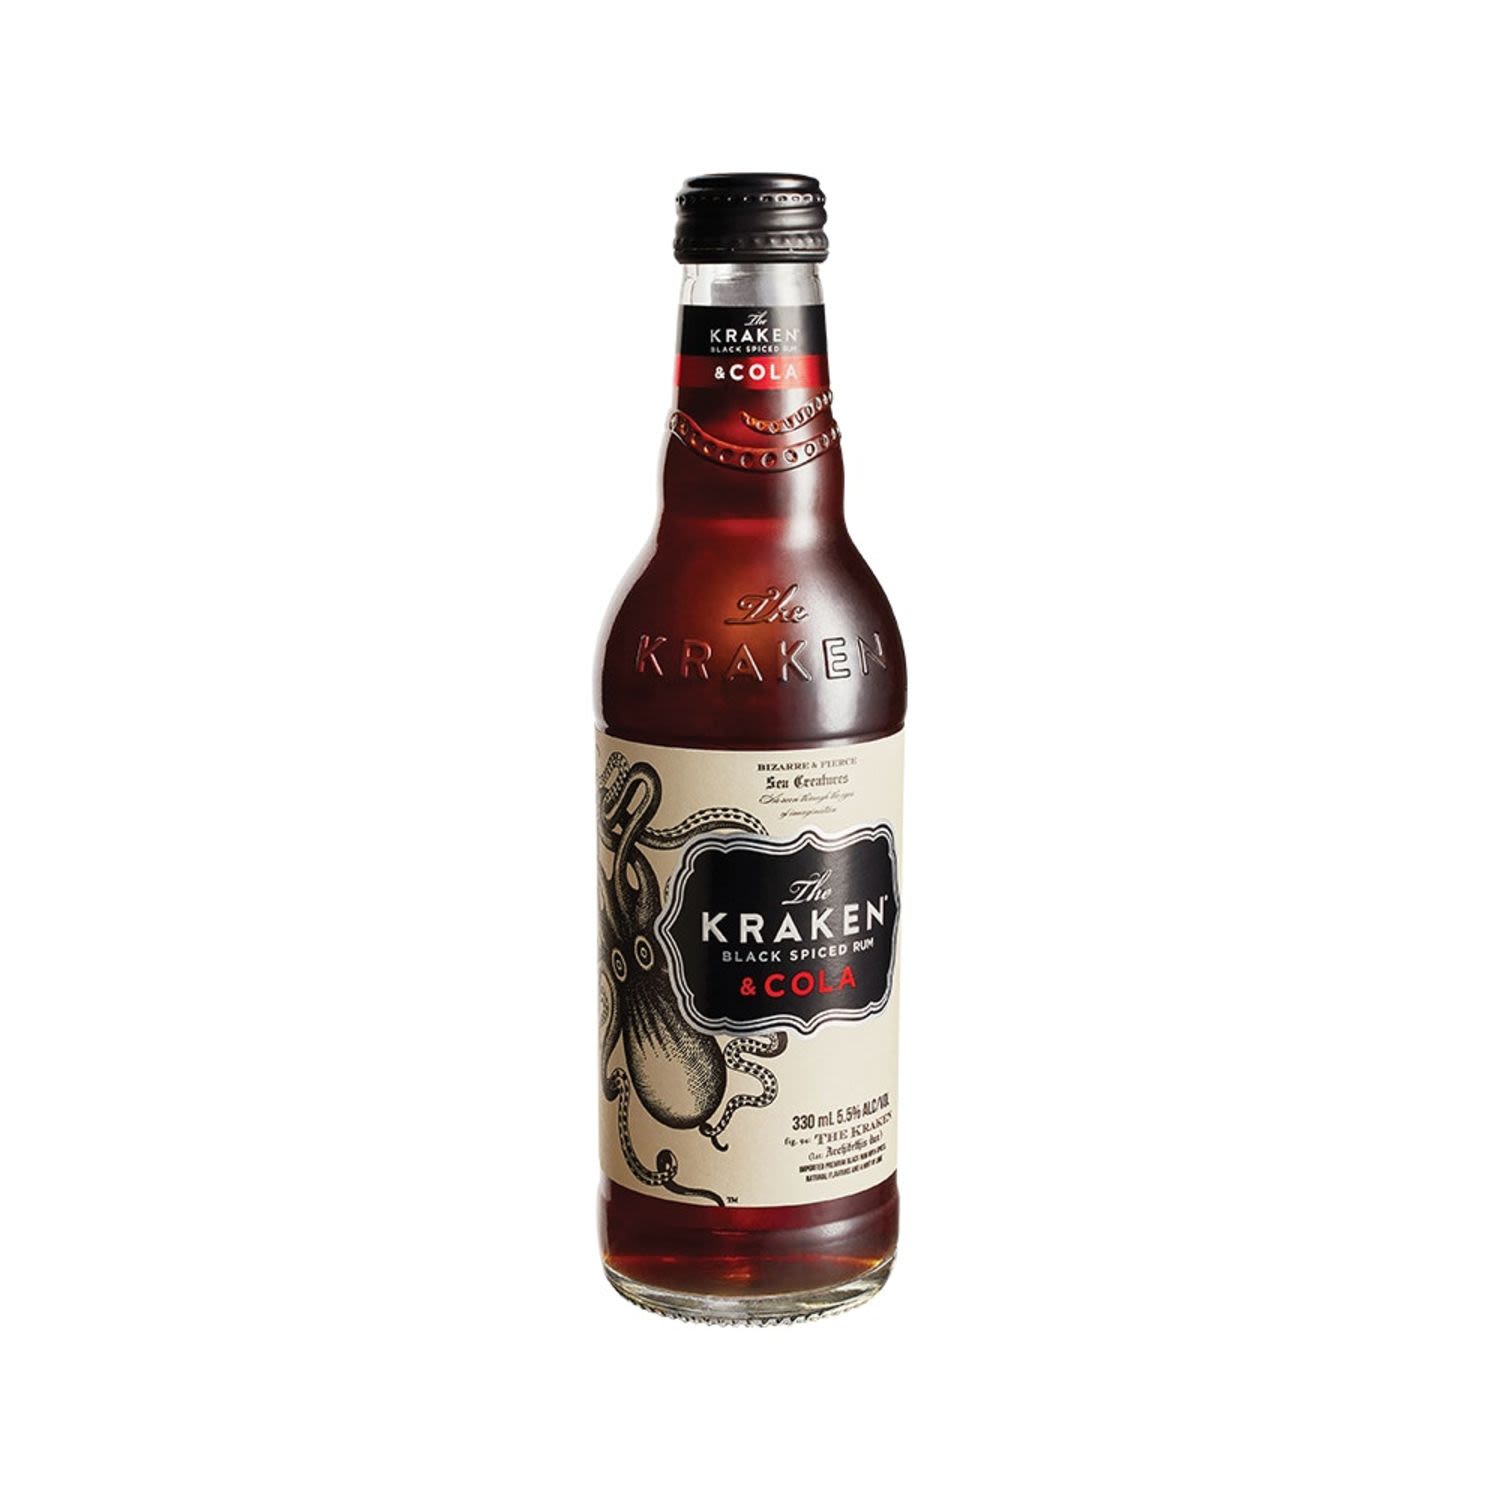 Kraken Black Spiced Rum & Cola Bottle 330mL 24 Pack